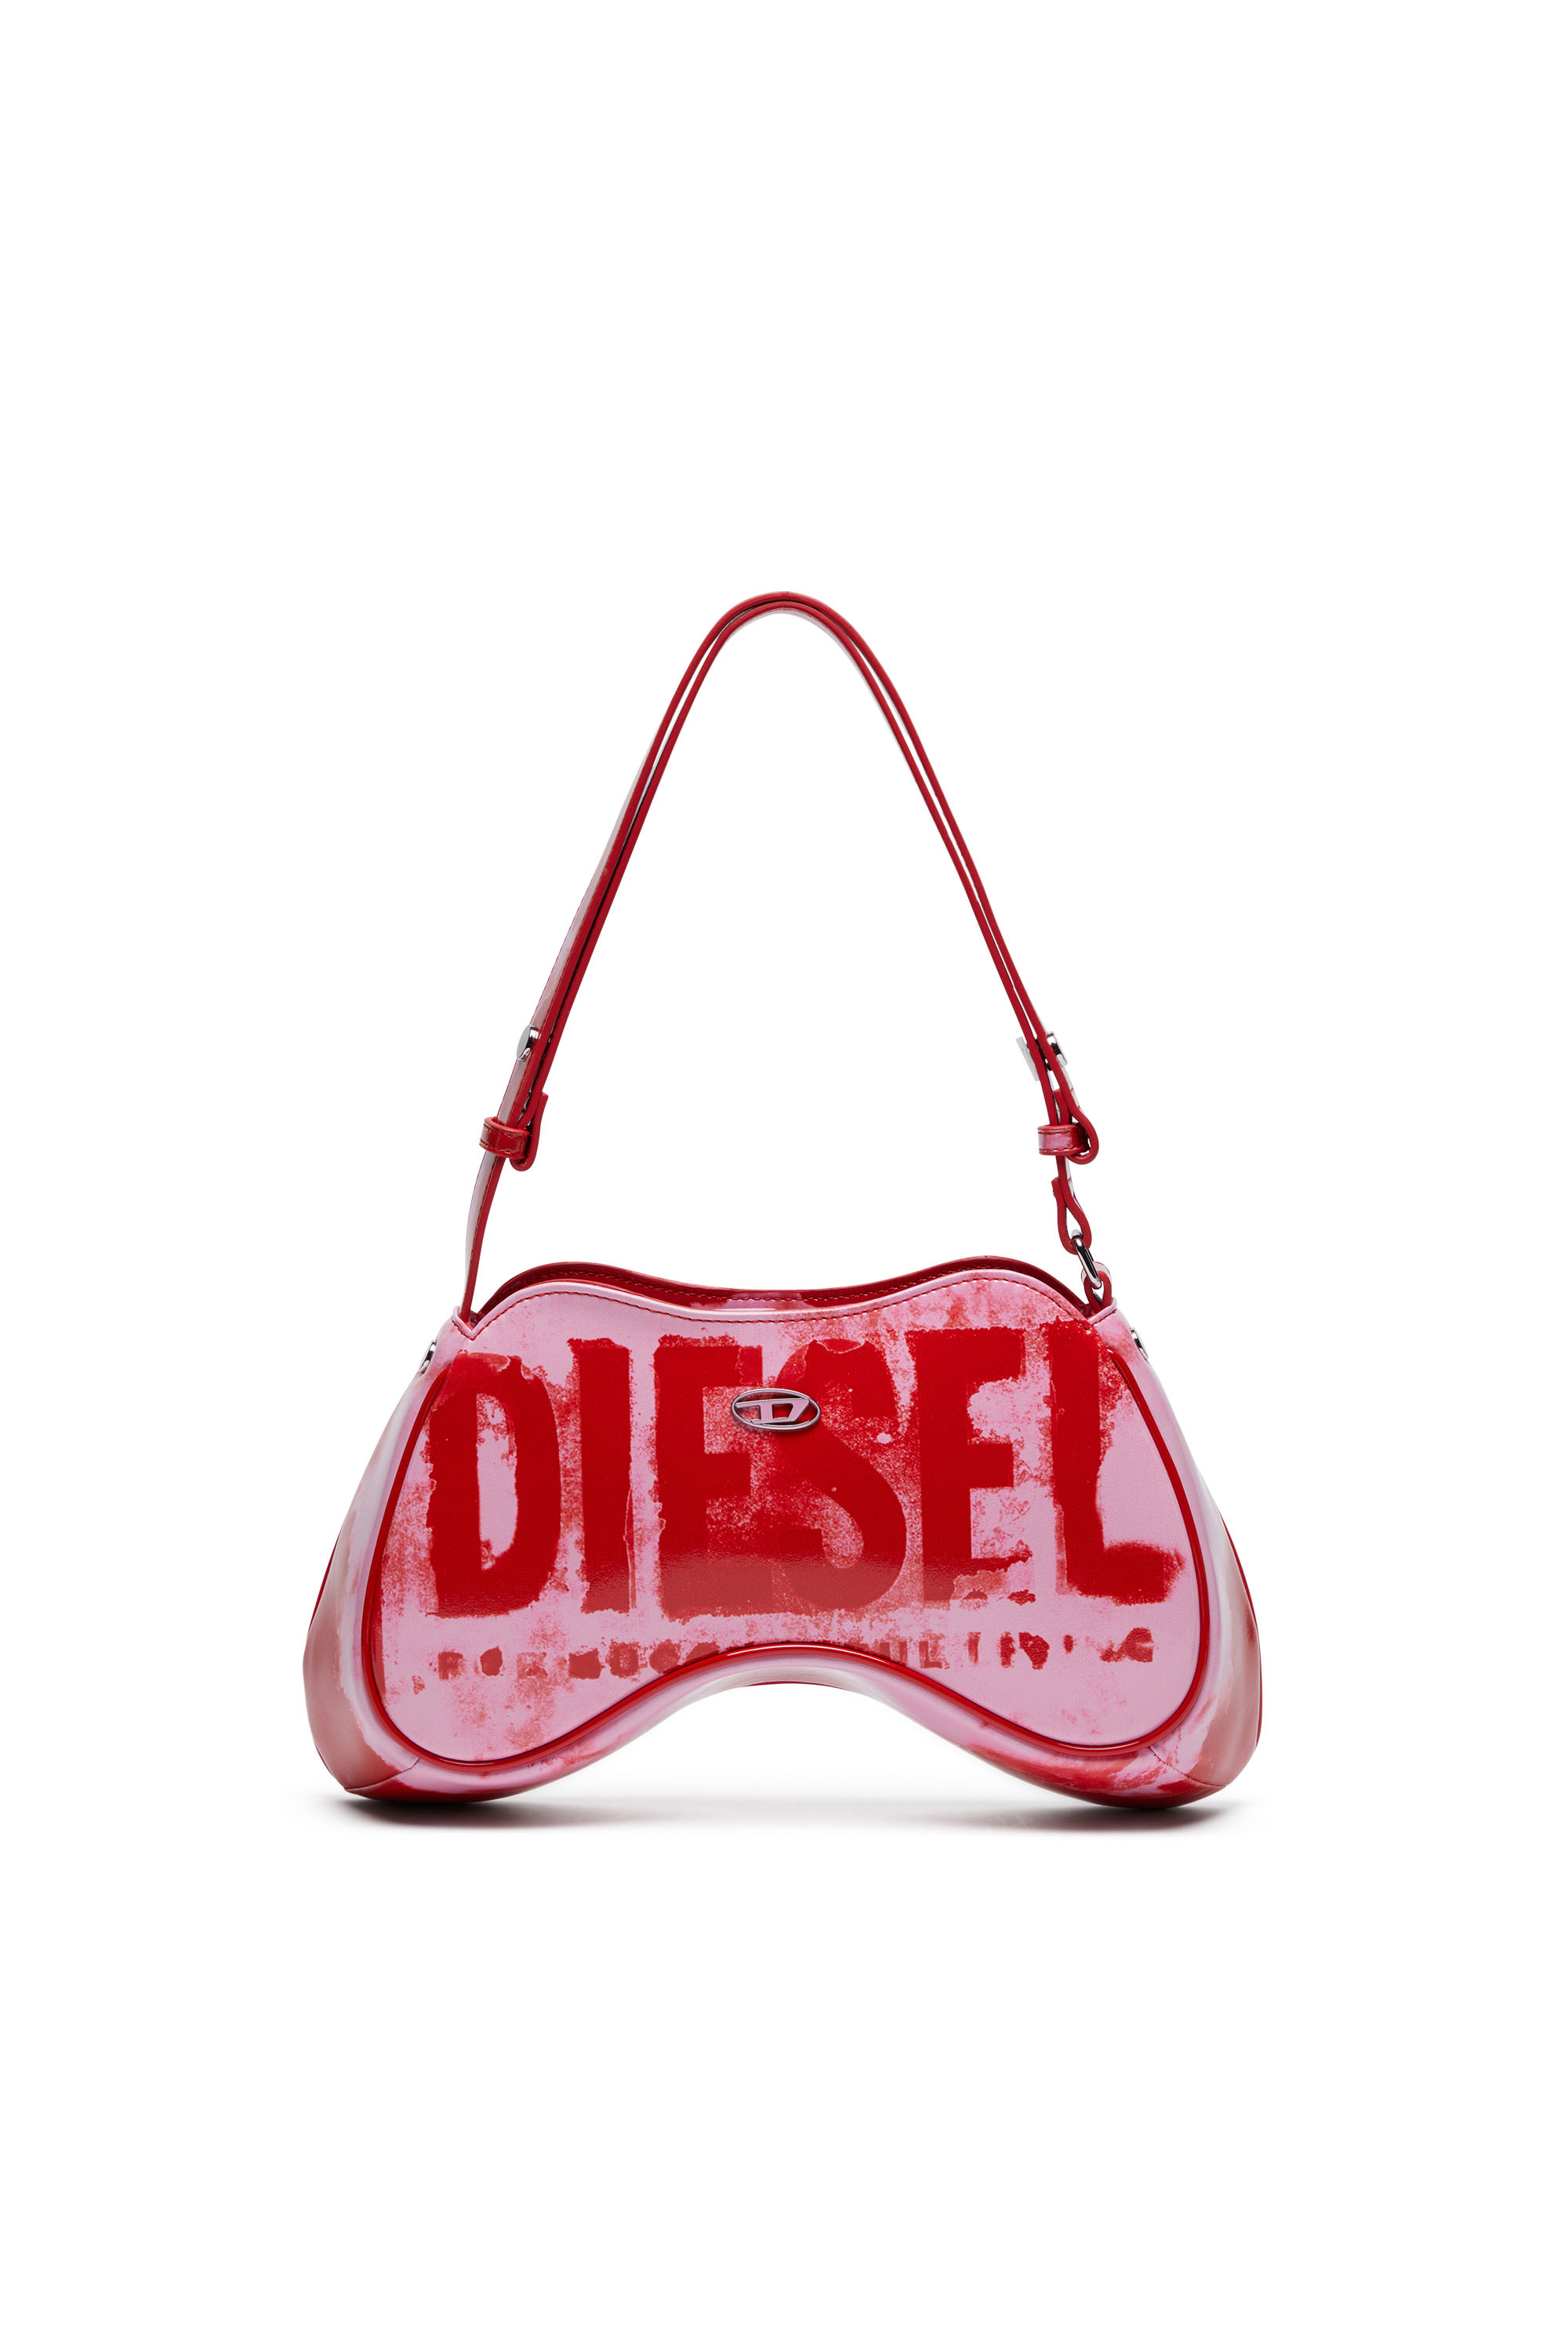 Diesel - PLAY SHOULDER, ピンク/レッド - Image 1